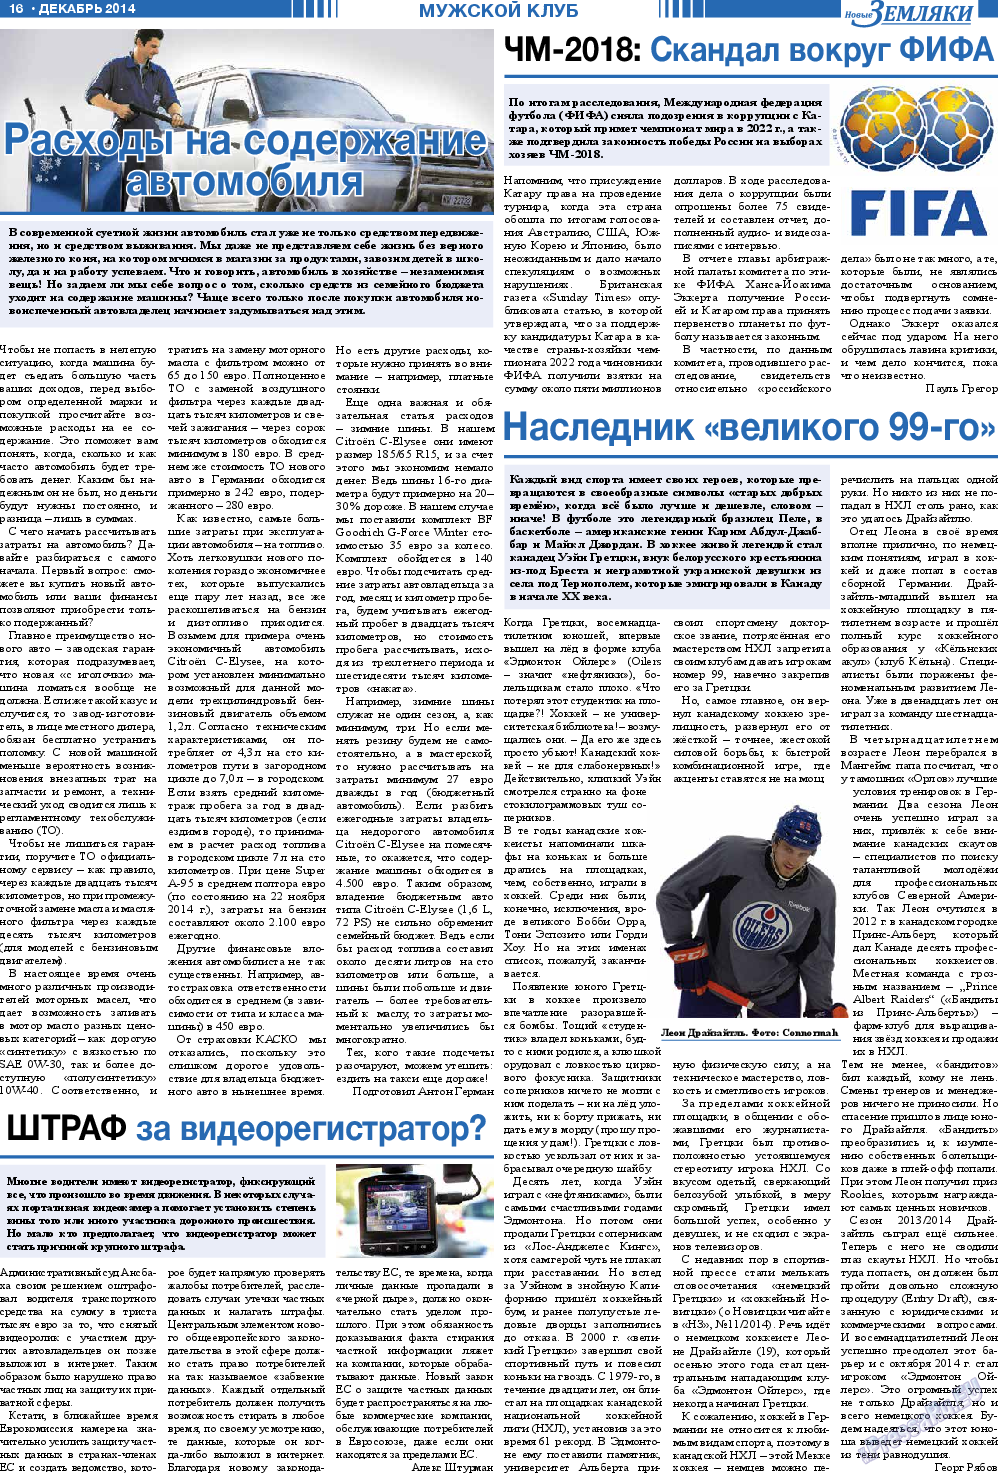 Новые Земляки, газета. 2014 №12 стр.16